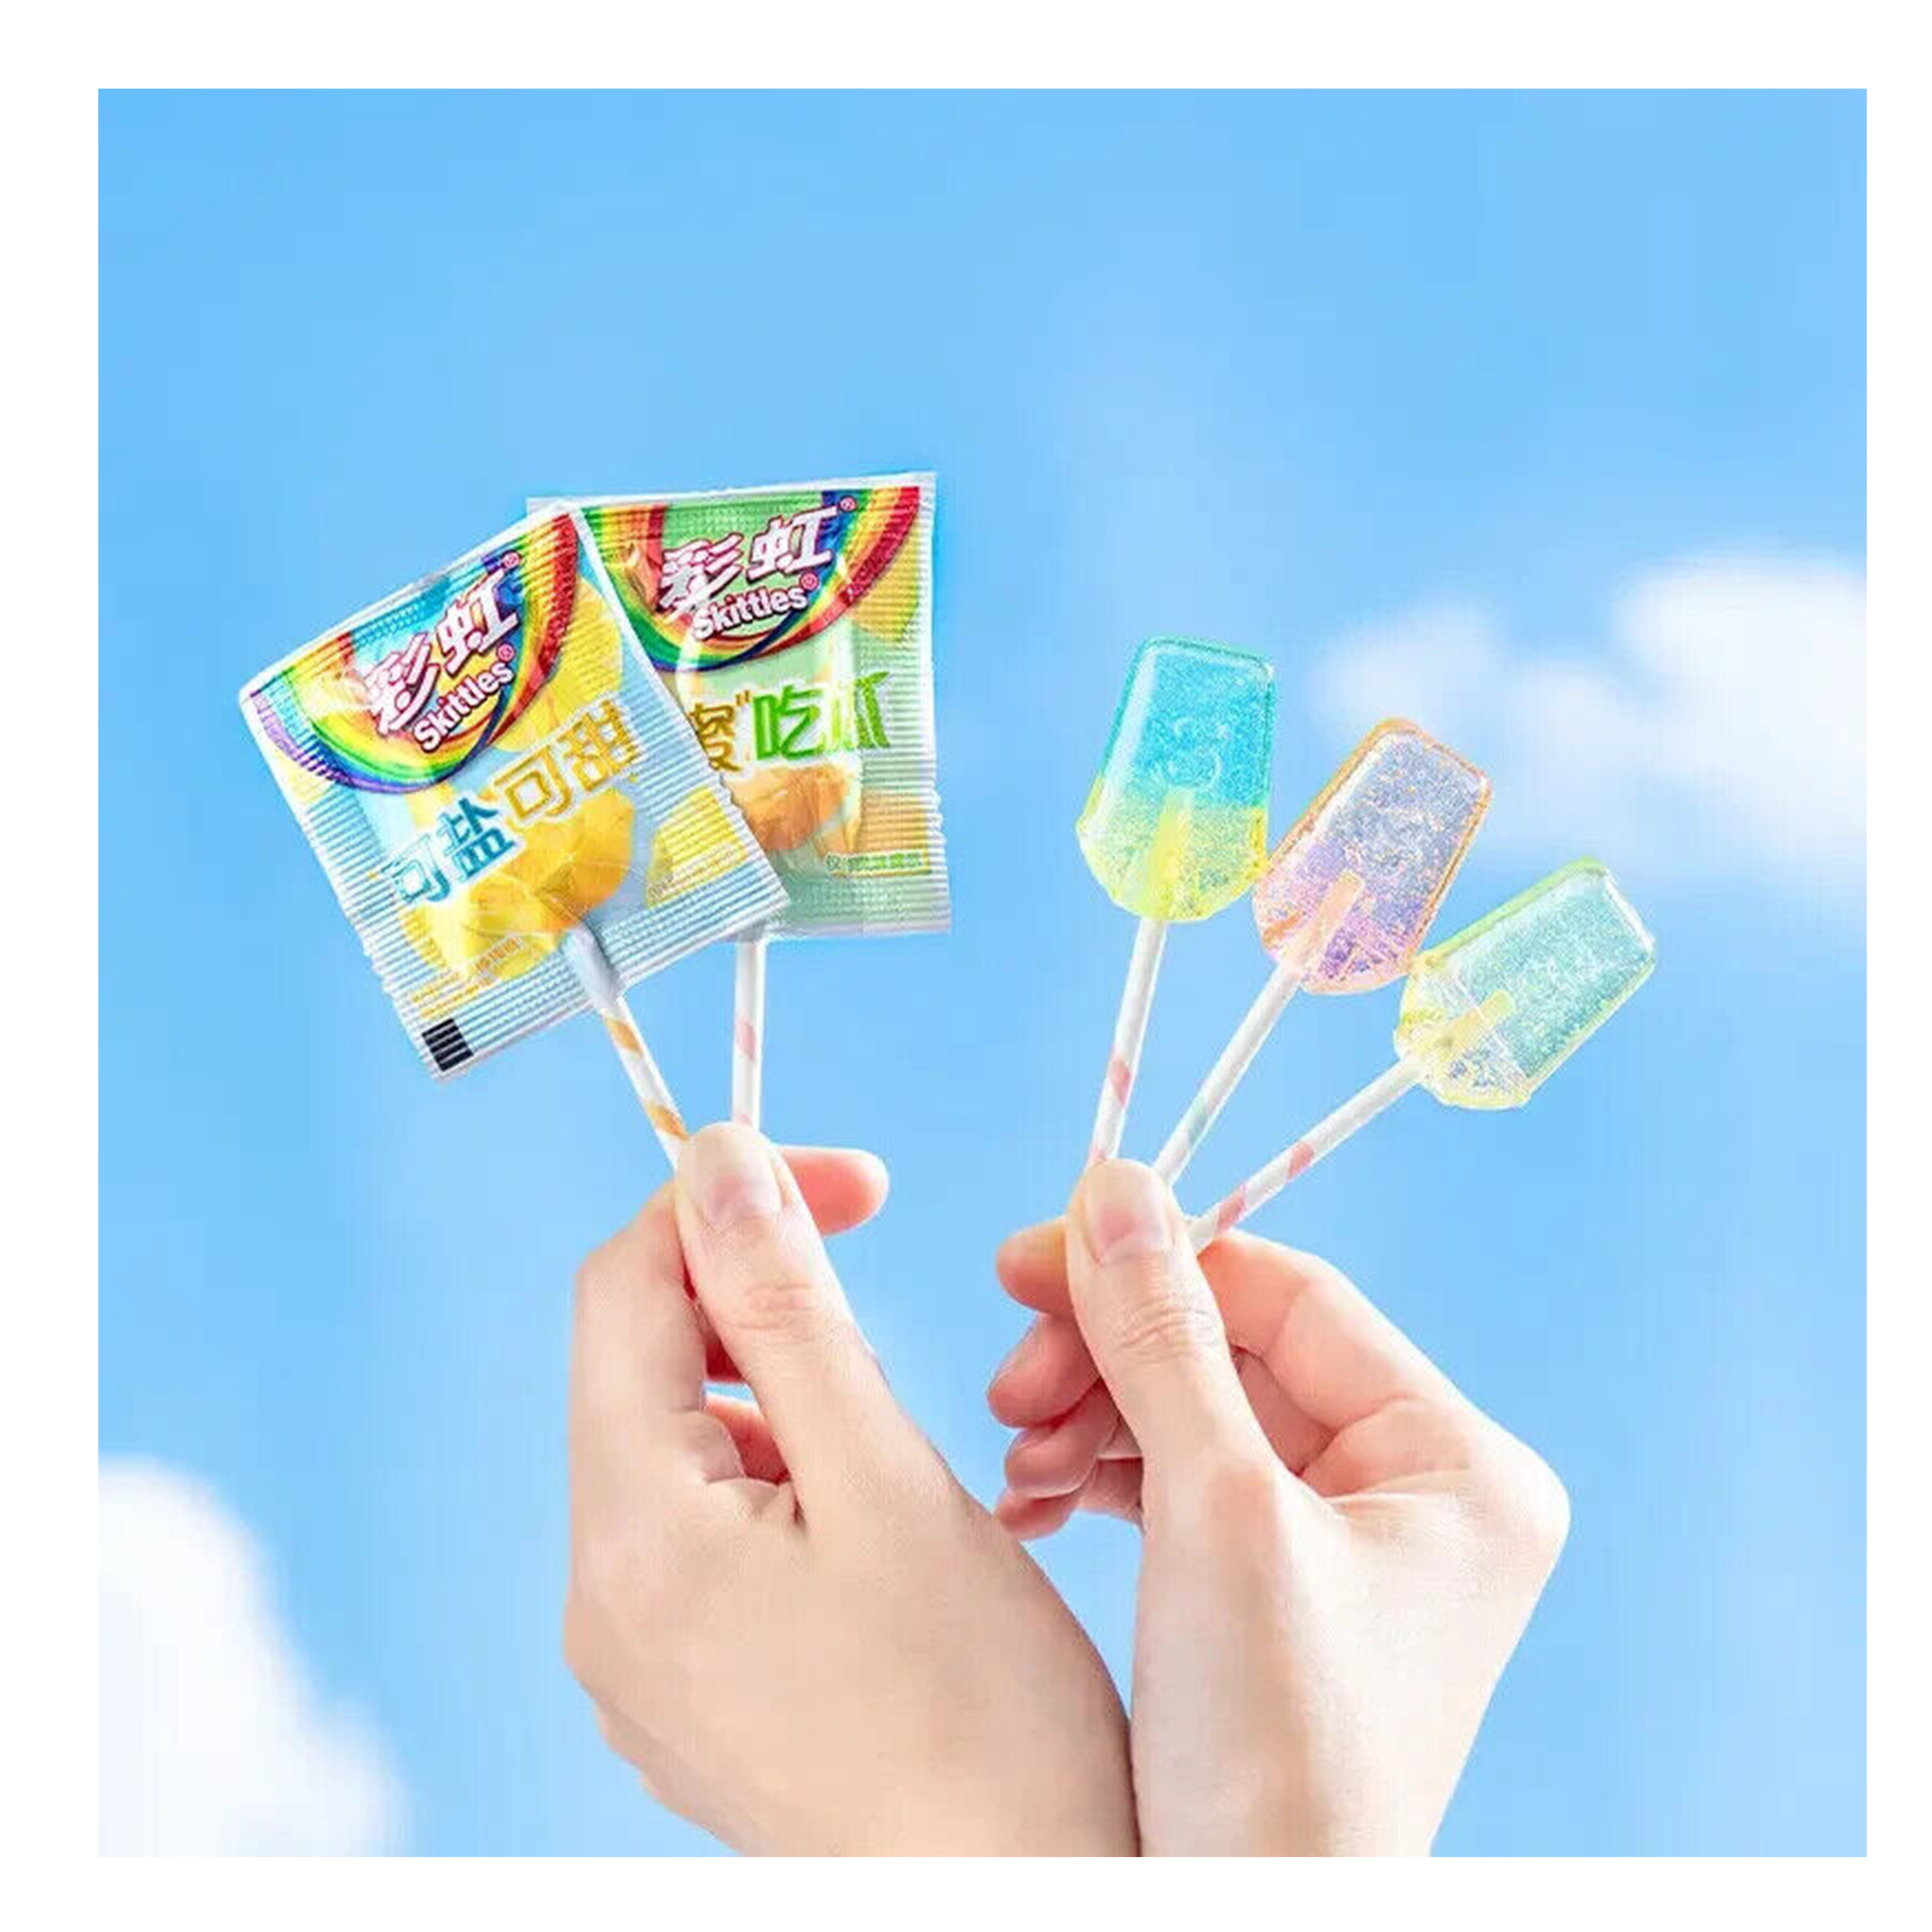 Skittles Lollipops - Asia